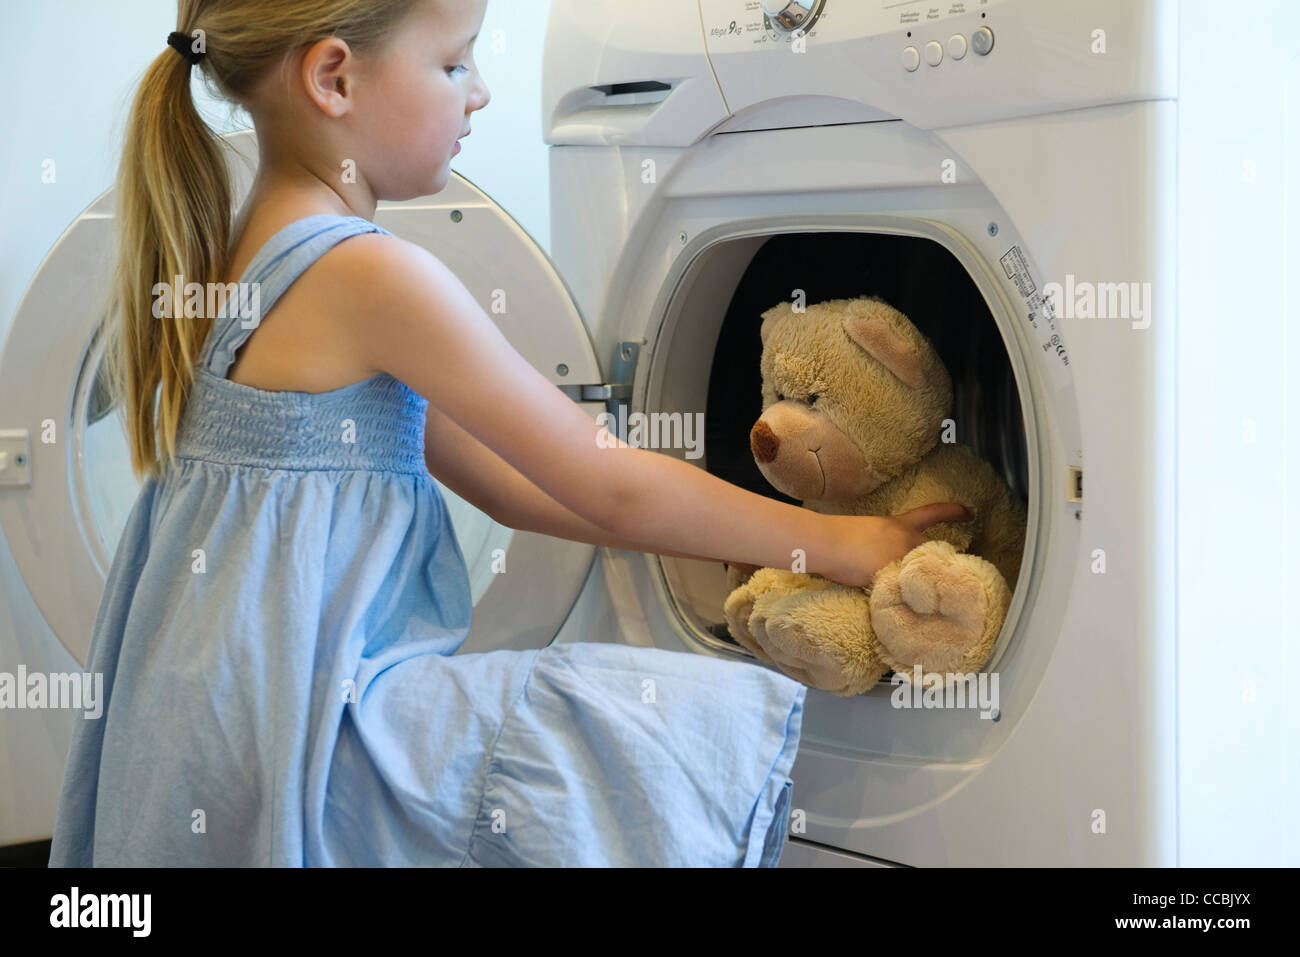 Waschmaschine und Trockner Stockfotos und -bilder Kaufen - Alamy